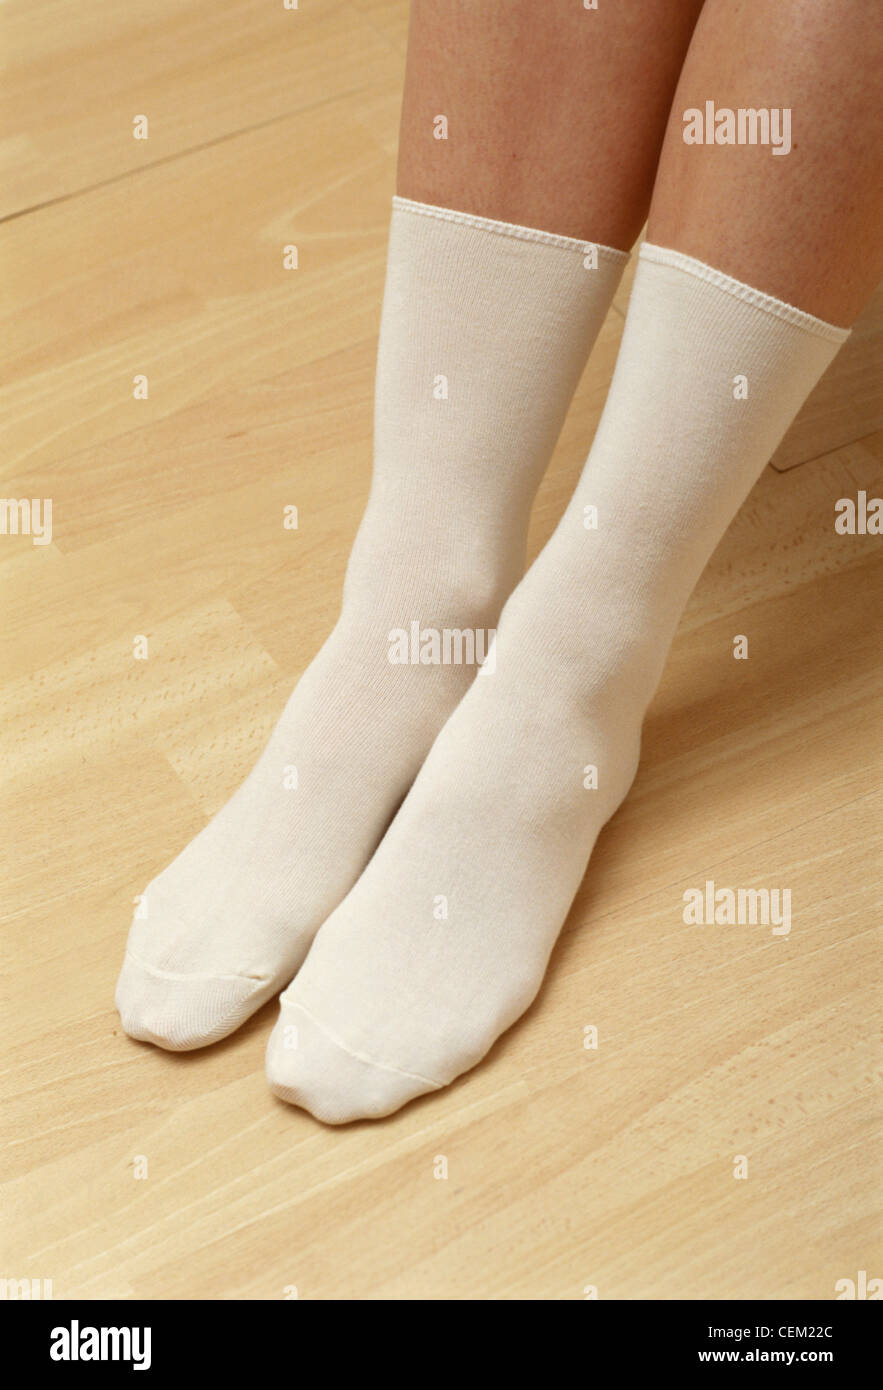 Dettaglio immagine di donna piedi lungo da indossare calze bianche Foto Stock